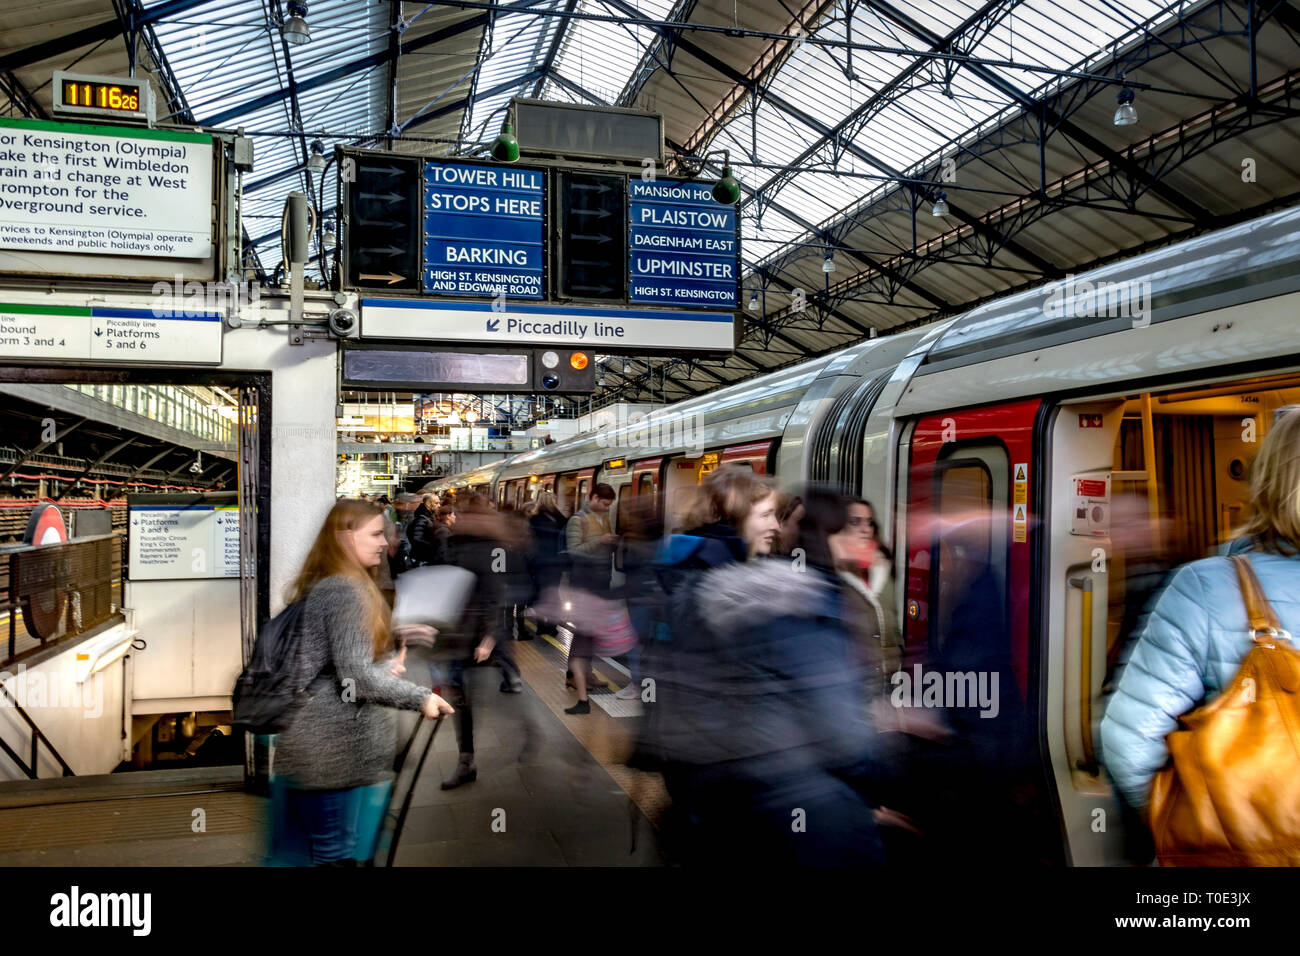 Les passagers se précipitent de la plate-forme pour monter à bord d'un train de métro District Line à la station Earl's court dans le sud-ouest de Londres, Londres, Royaume-Uni Banque D'Images